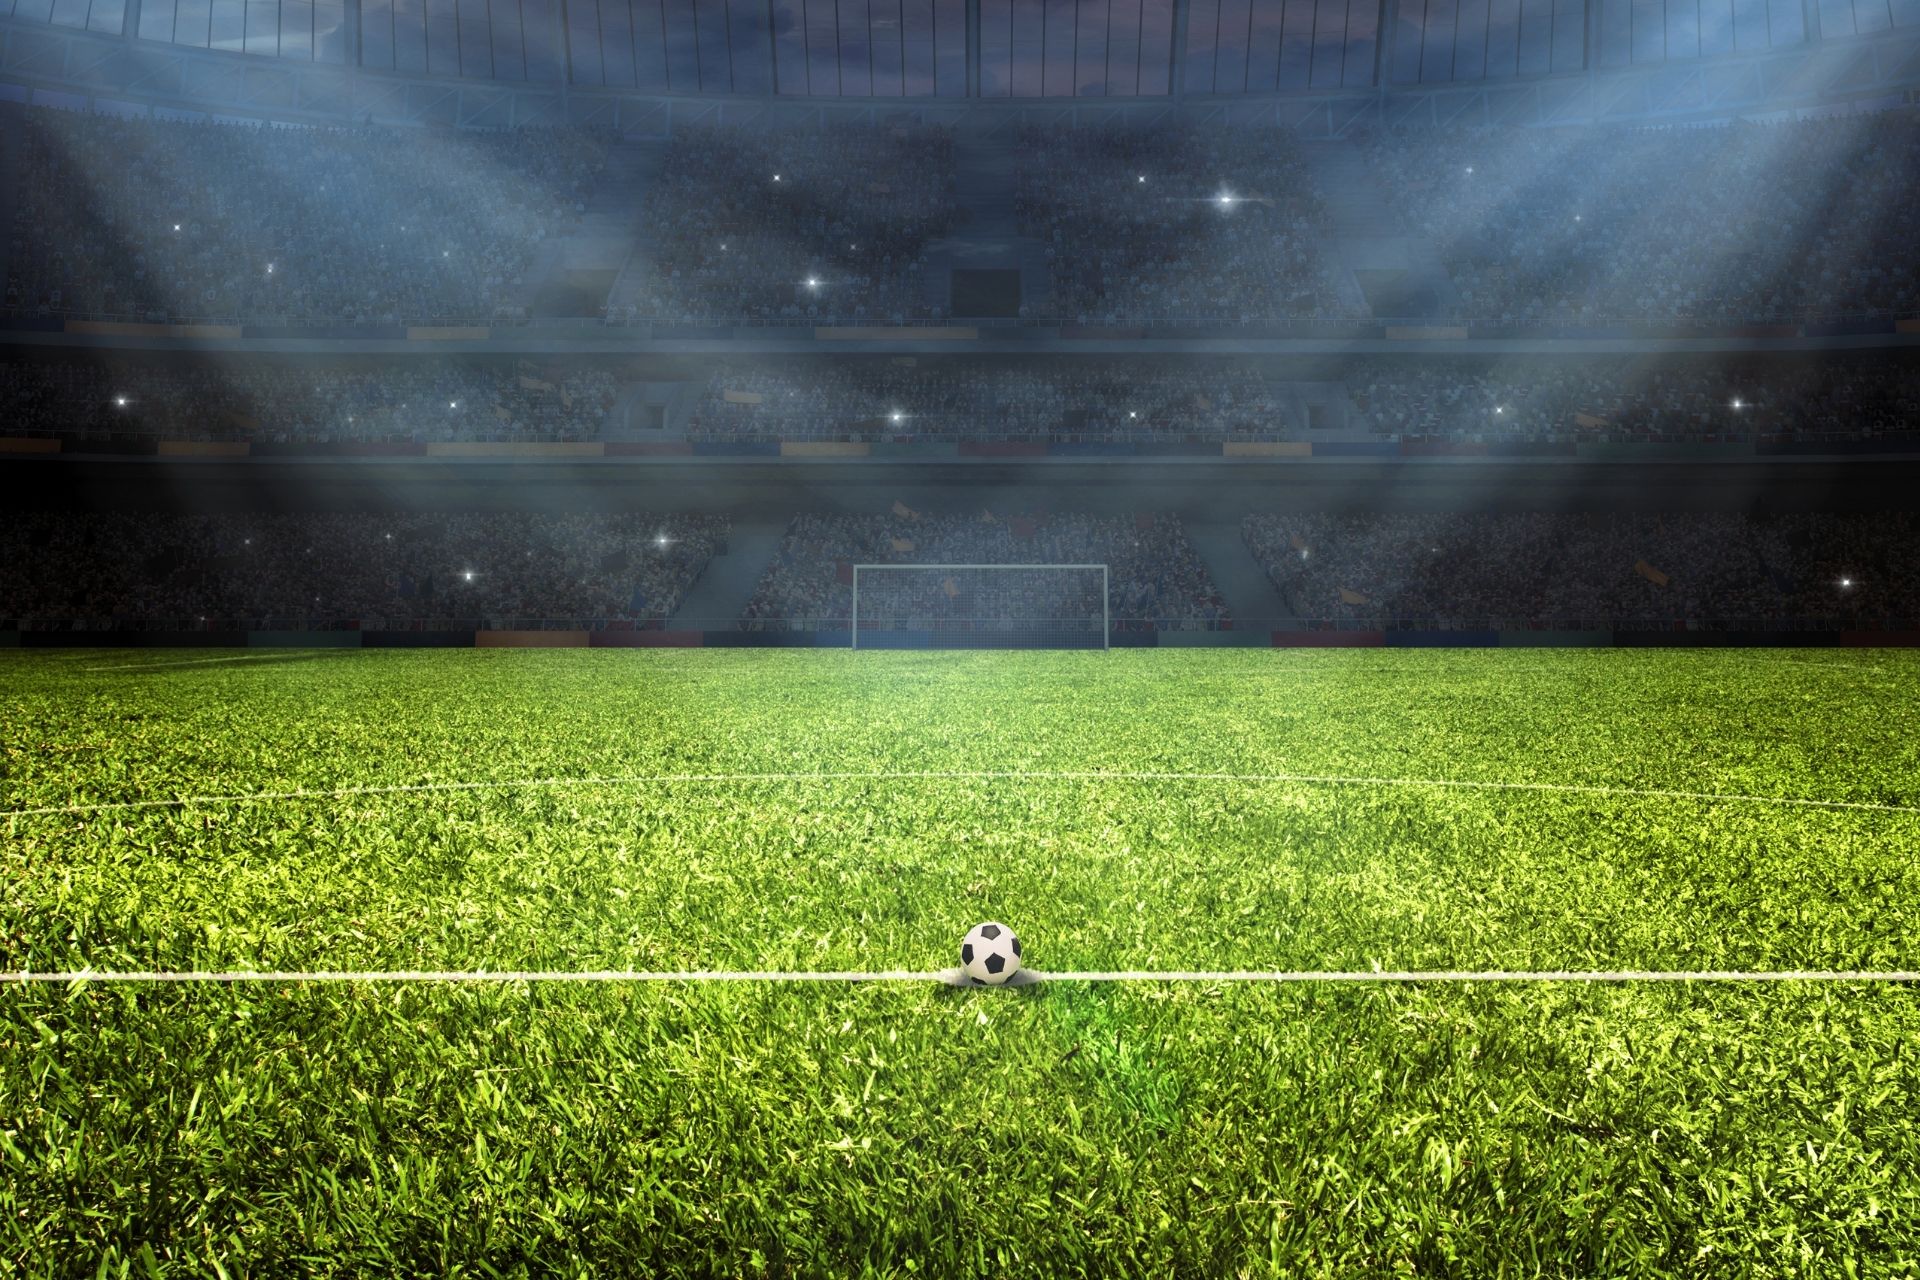 Na stadionie Stadio Olimpico dnia 2022-09-11 16:00 miało miejsce spotkanie pomiędzy Lazio i Verona zakończone wynikiem 2-0